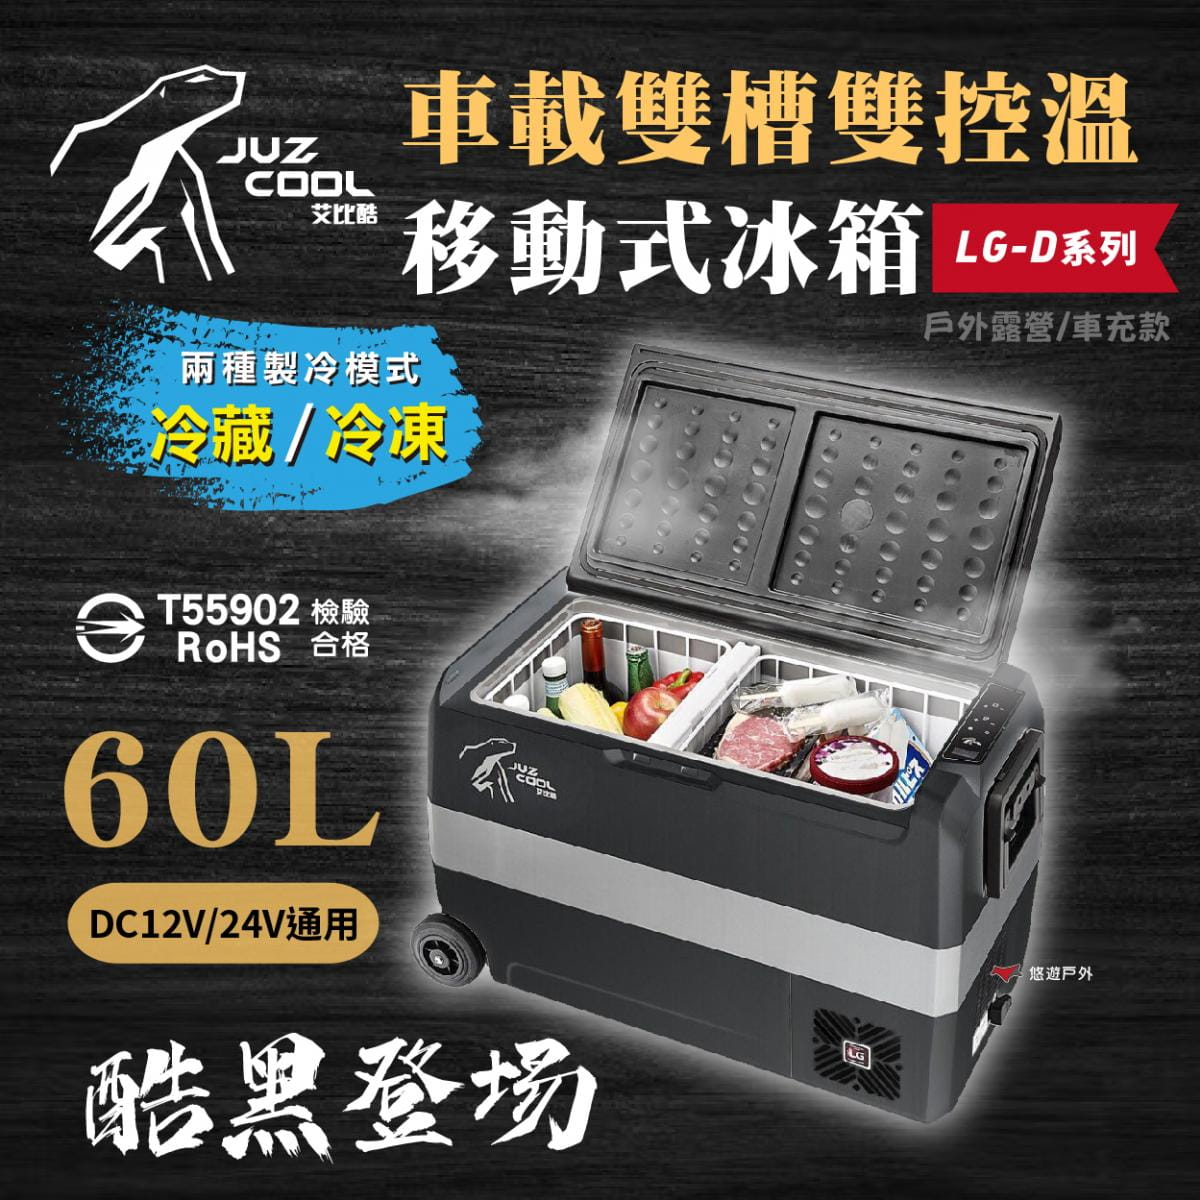 【艾比酷】雙槽雙溫控車用冰箱LG-D60 (悠遊戶外) 1